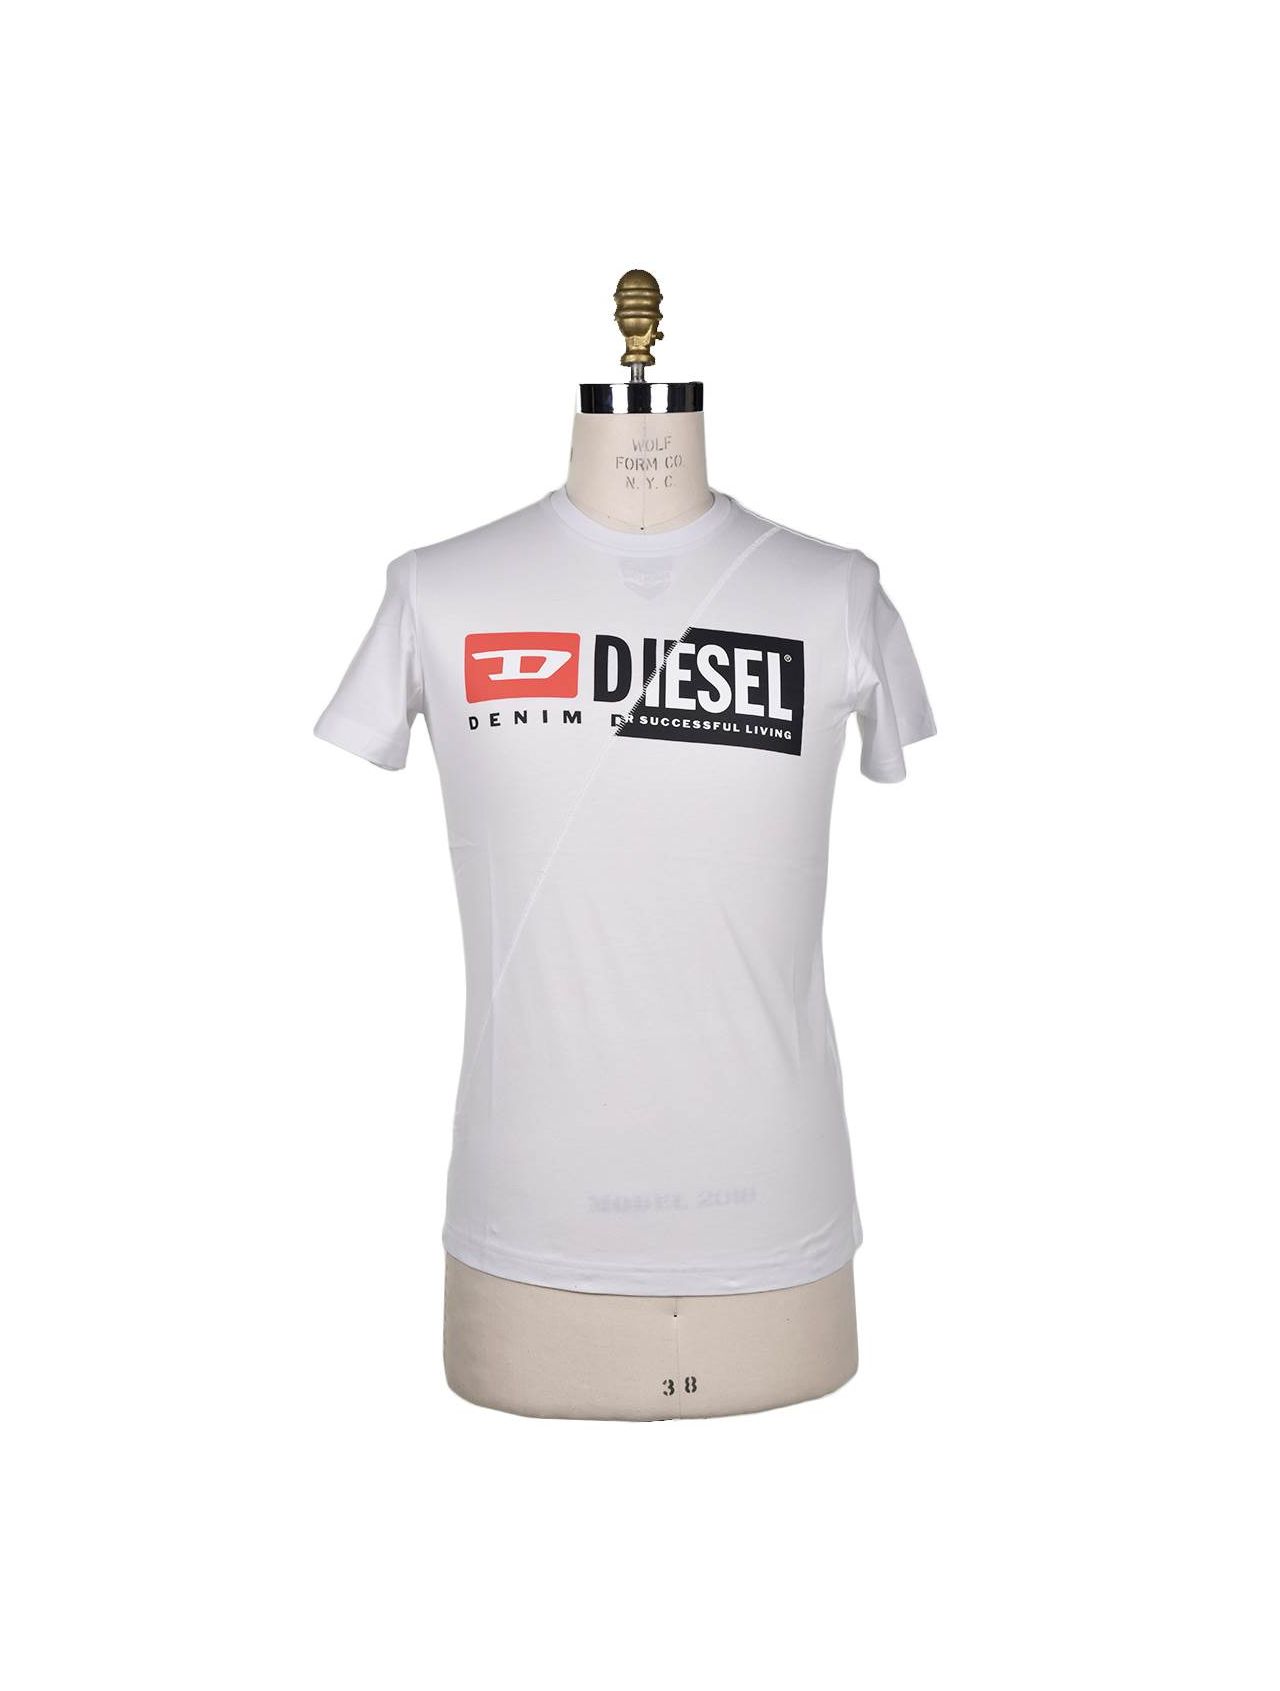 DIESEL White Cotton T-shirt T-DIEGO-CUTY